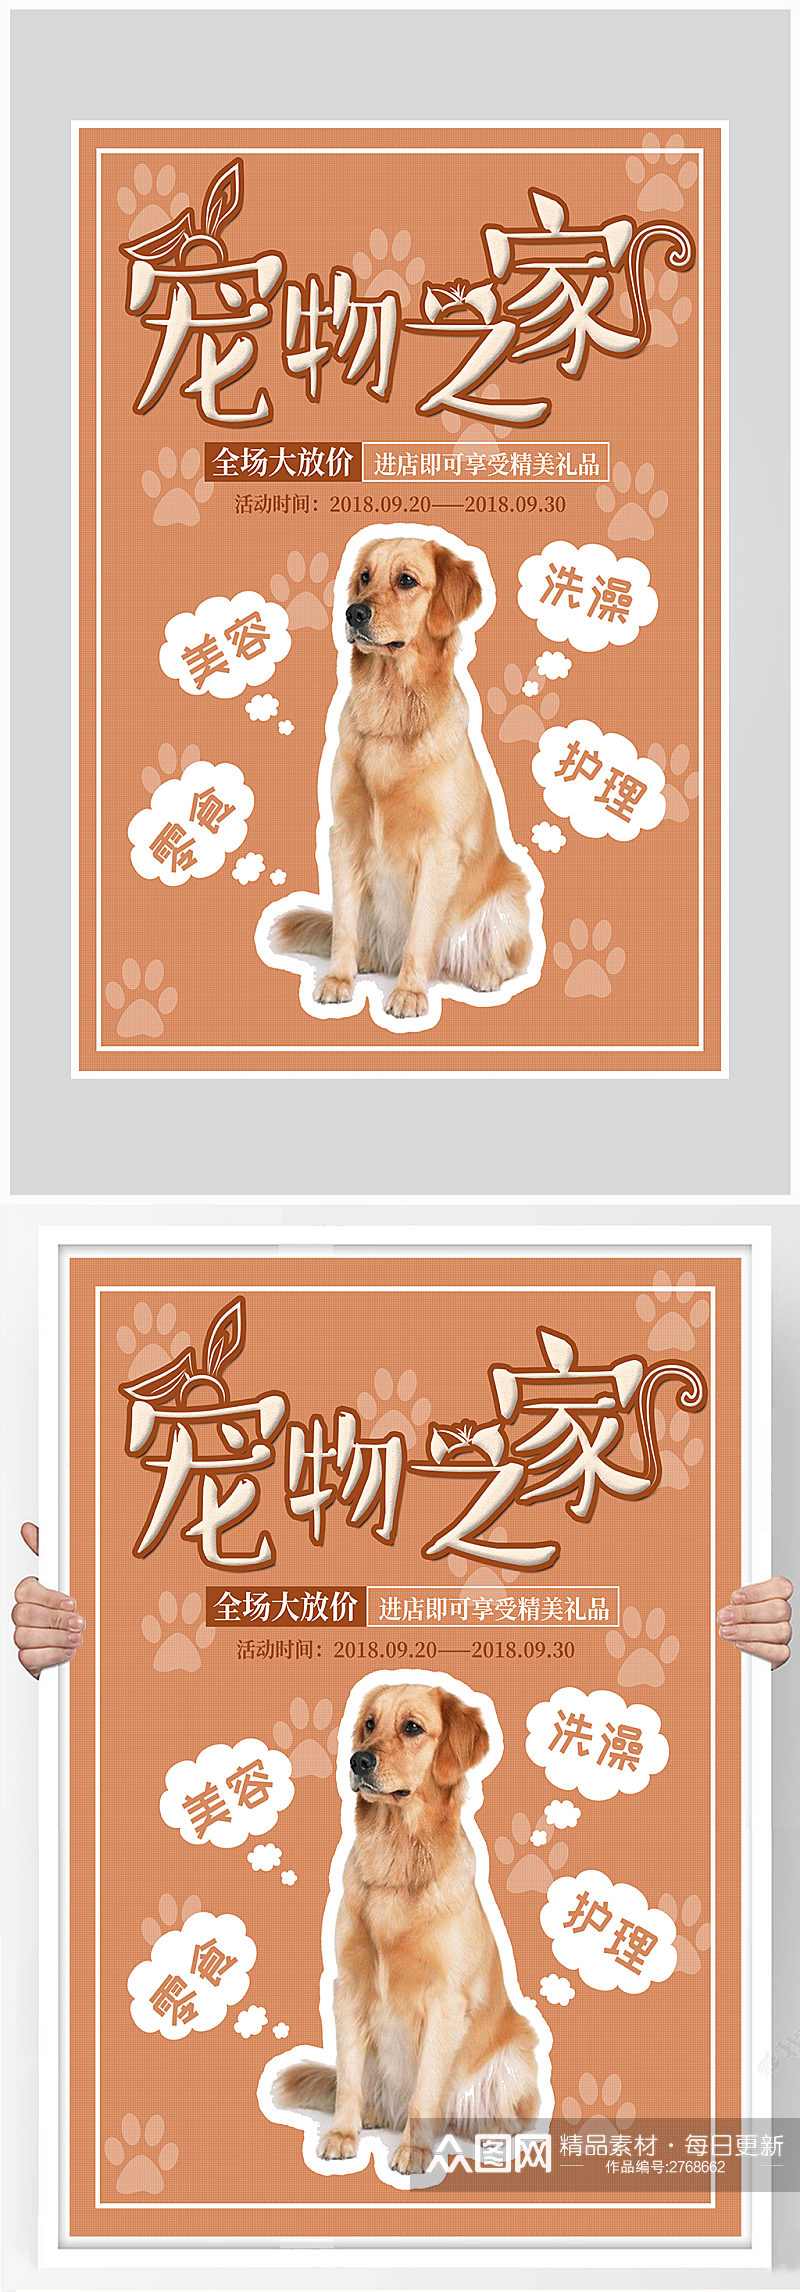 创意宠物之家小狗小猫海报设计素材